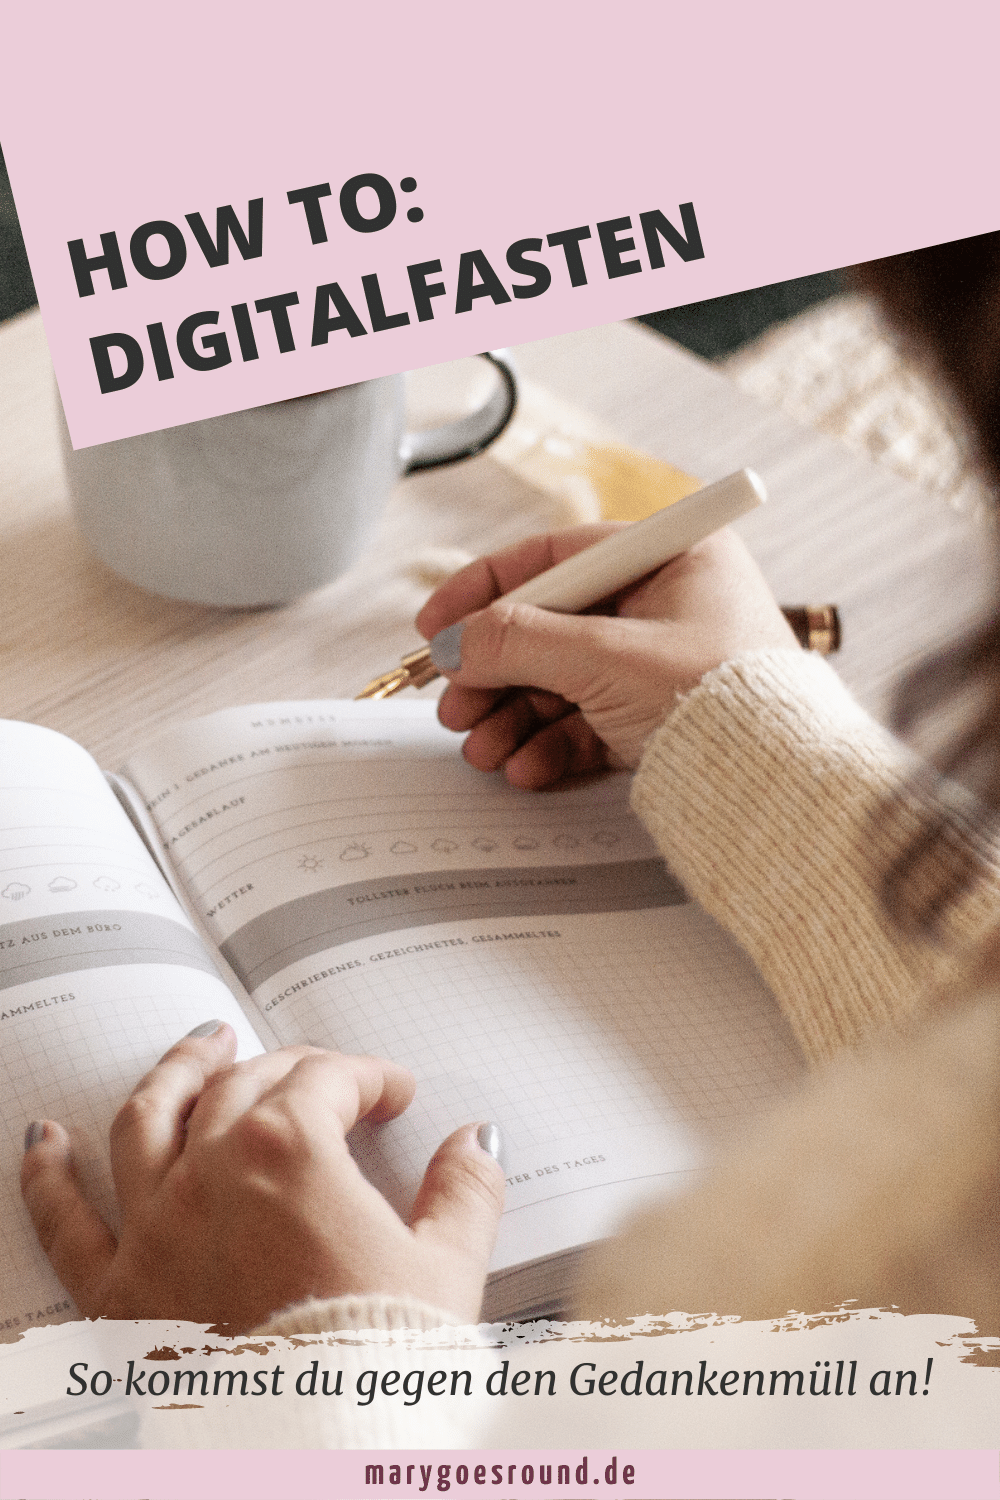 Digitales Fasten: Vorteile und Tipps